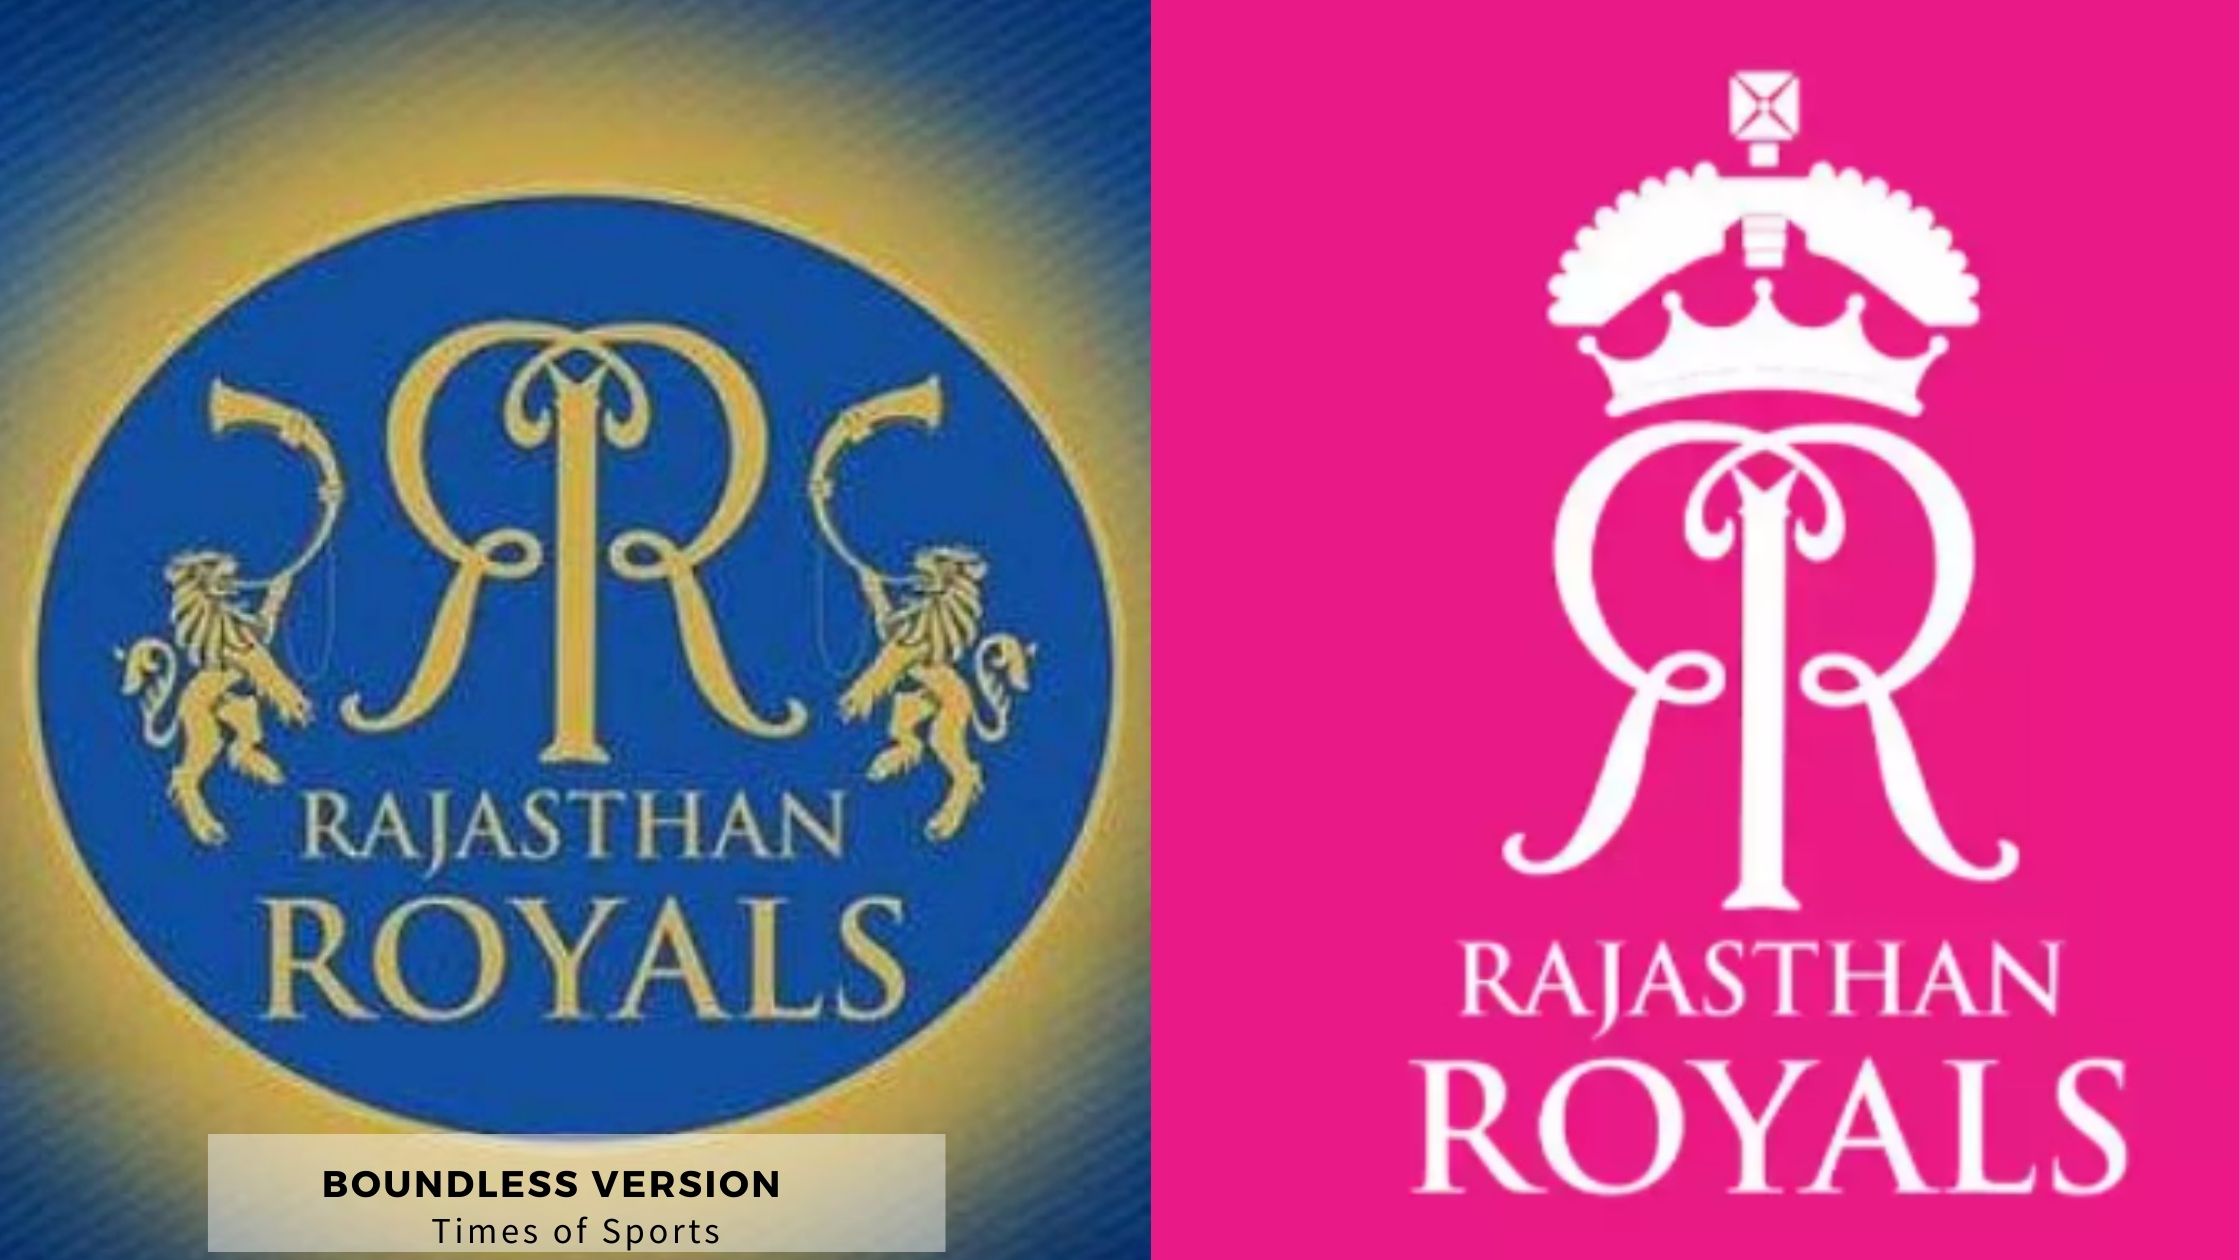 Rajasthan Royals Logo